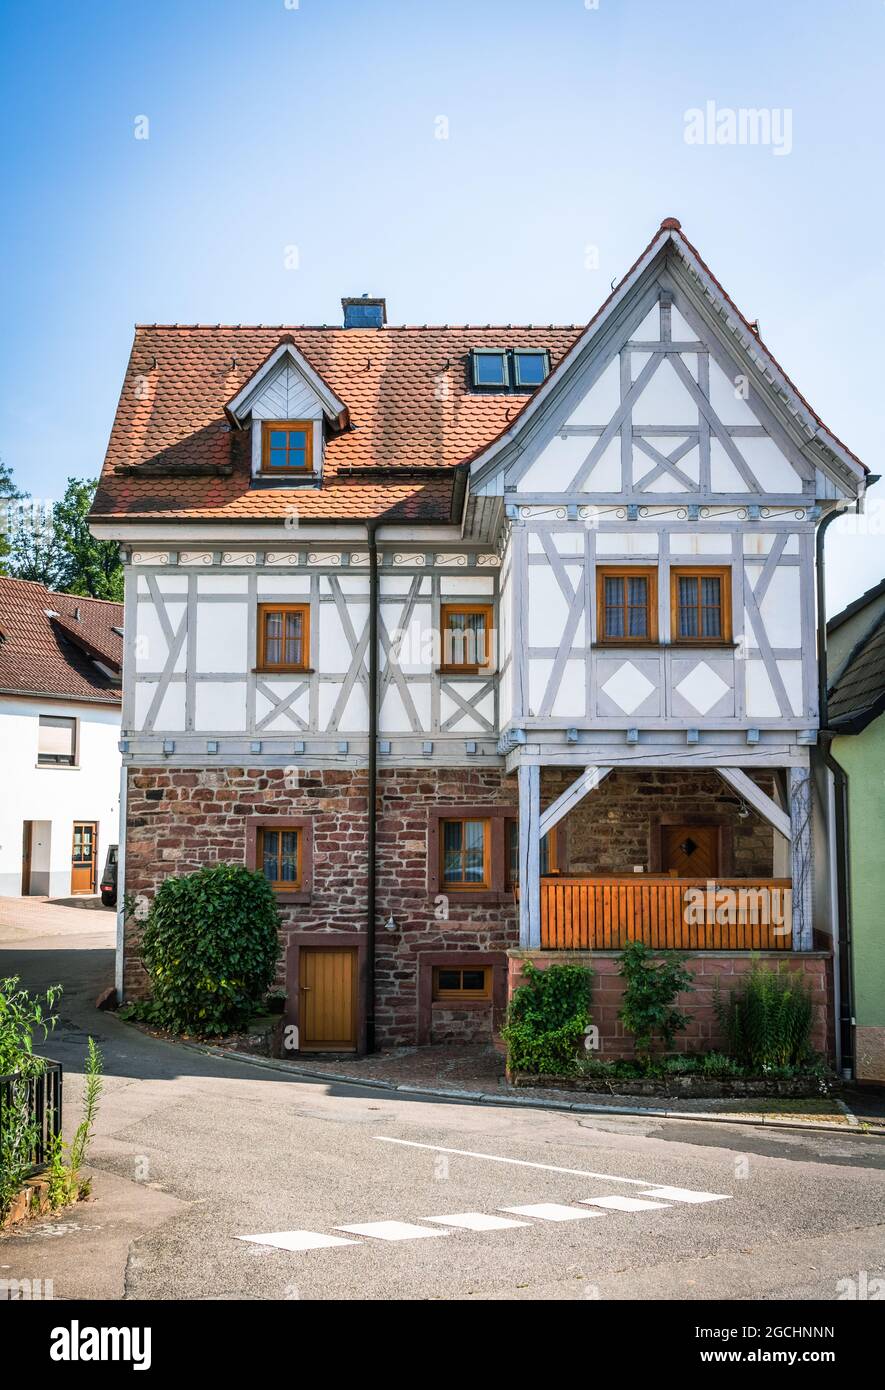 Splendidamente ristrutturato casa a graticcio tipico per la regione in una piccola comunità nel sud della Germania Foto Stock